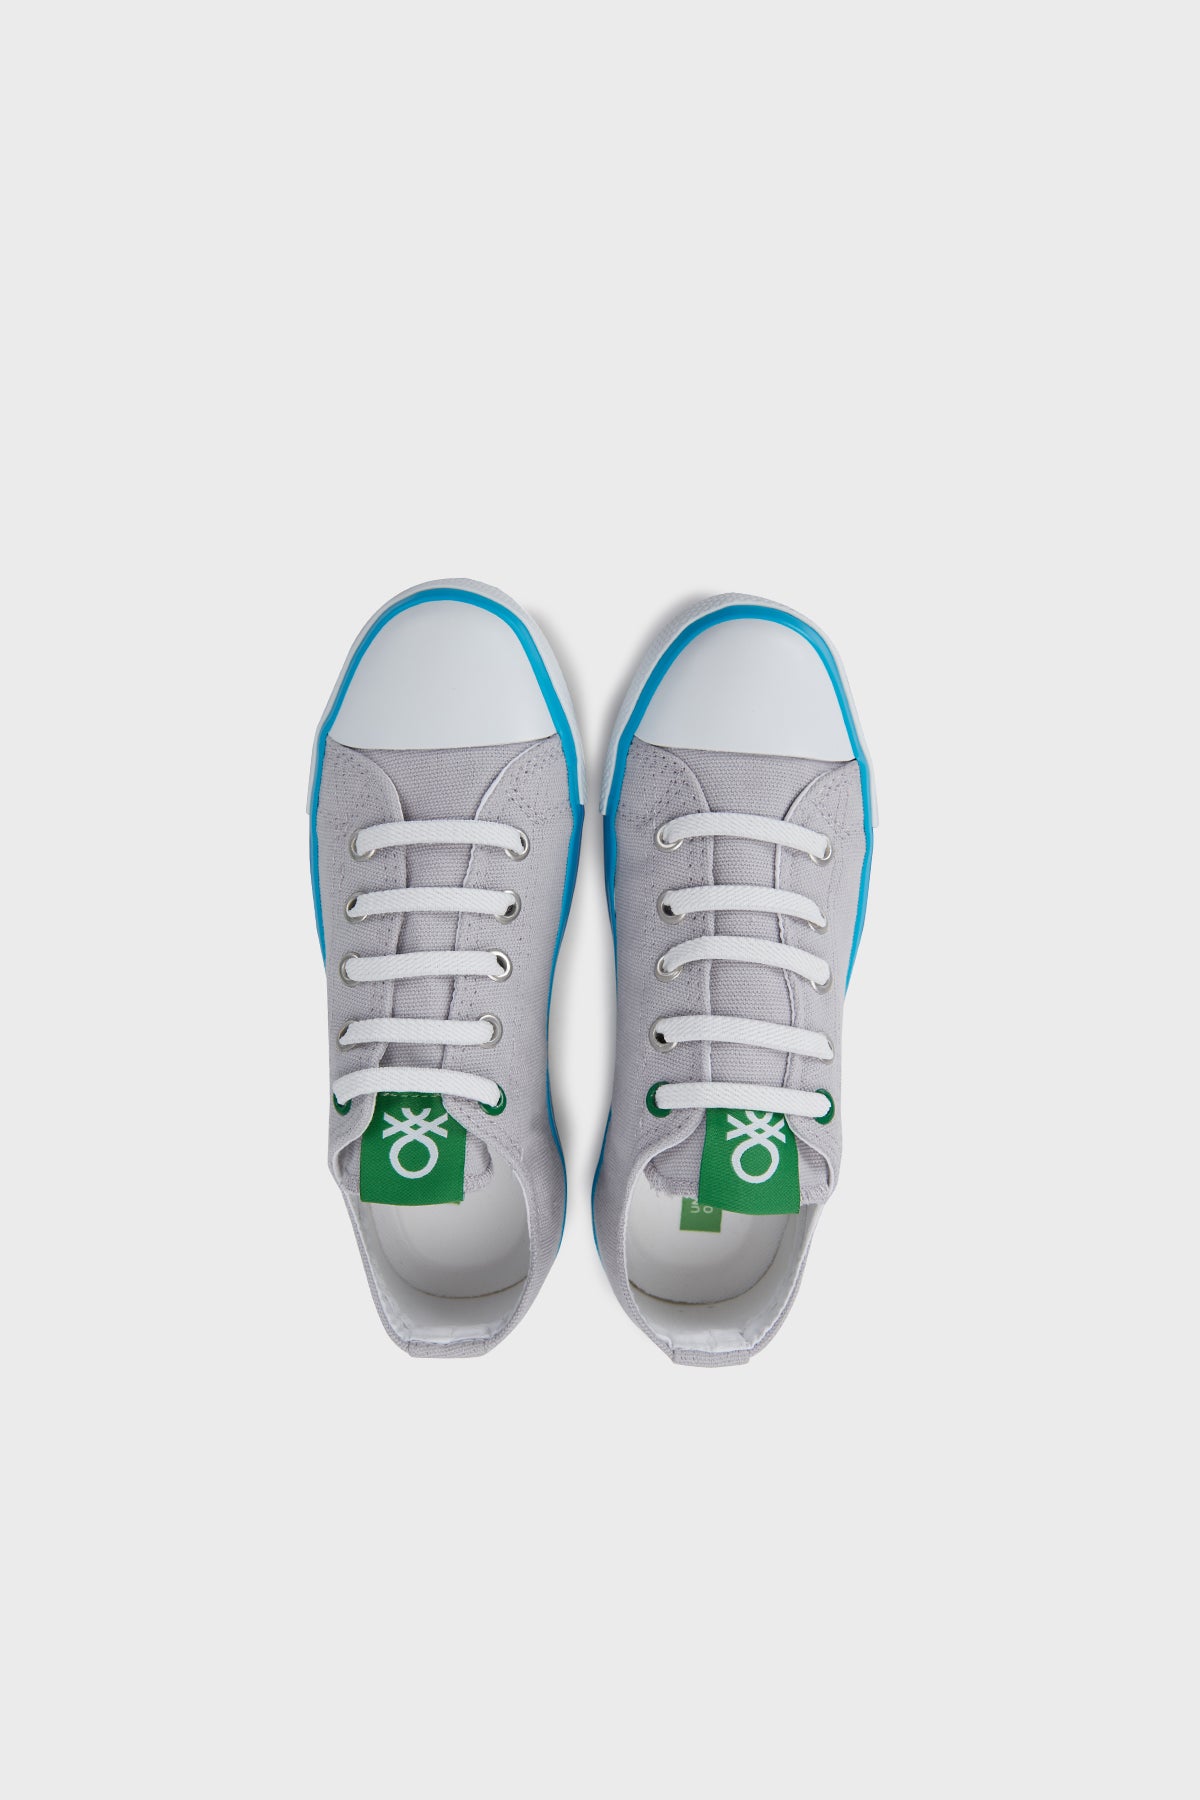 United Colors Of Benetton Sneaker Unisex Çocuk Ayakkabı BN-30175 GRİ